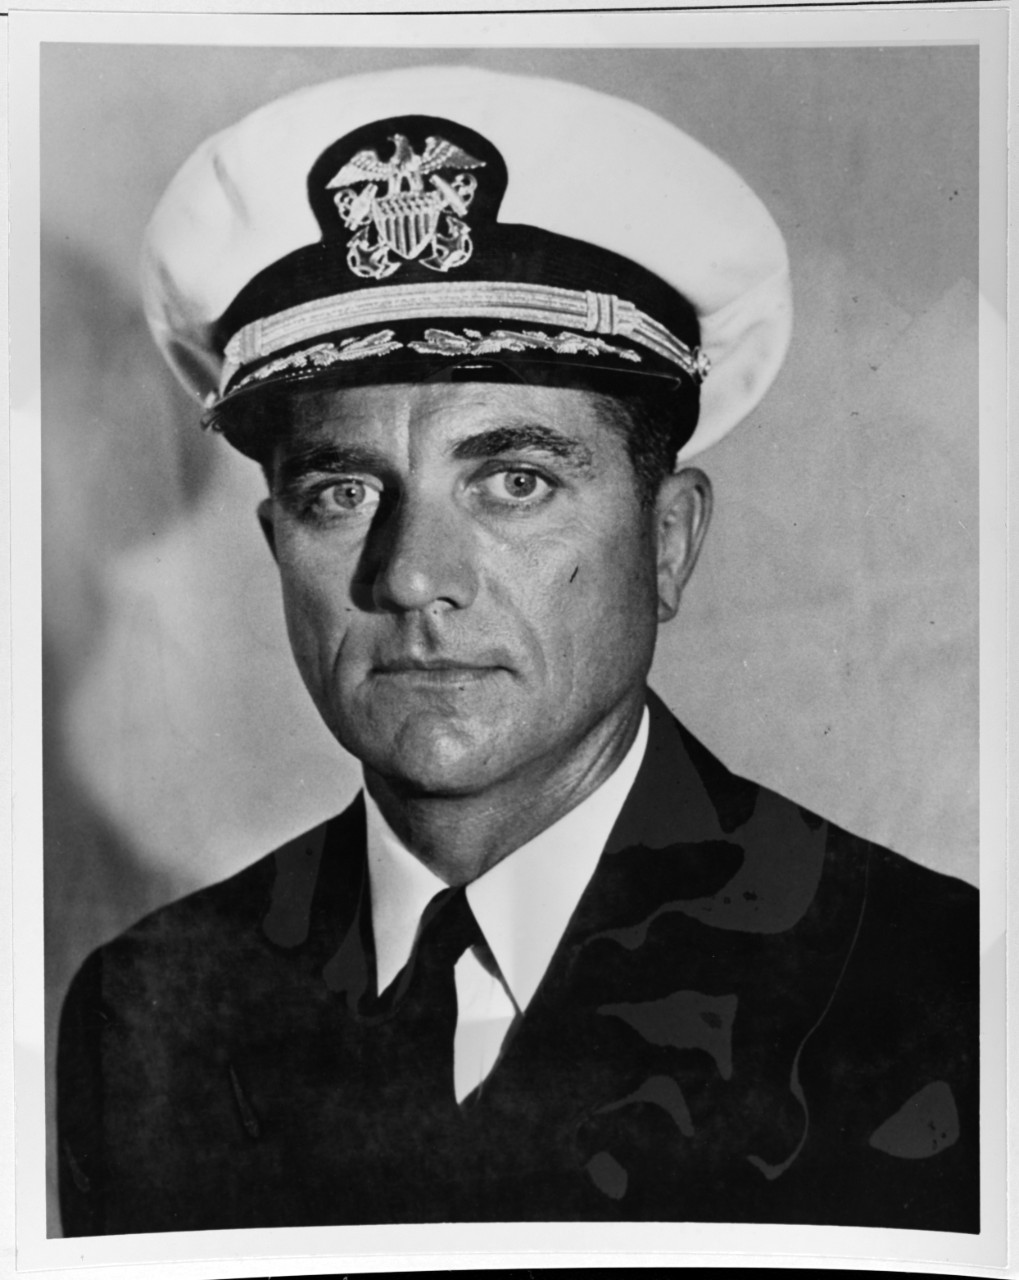 Commander James L. Rothermel, USN